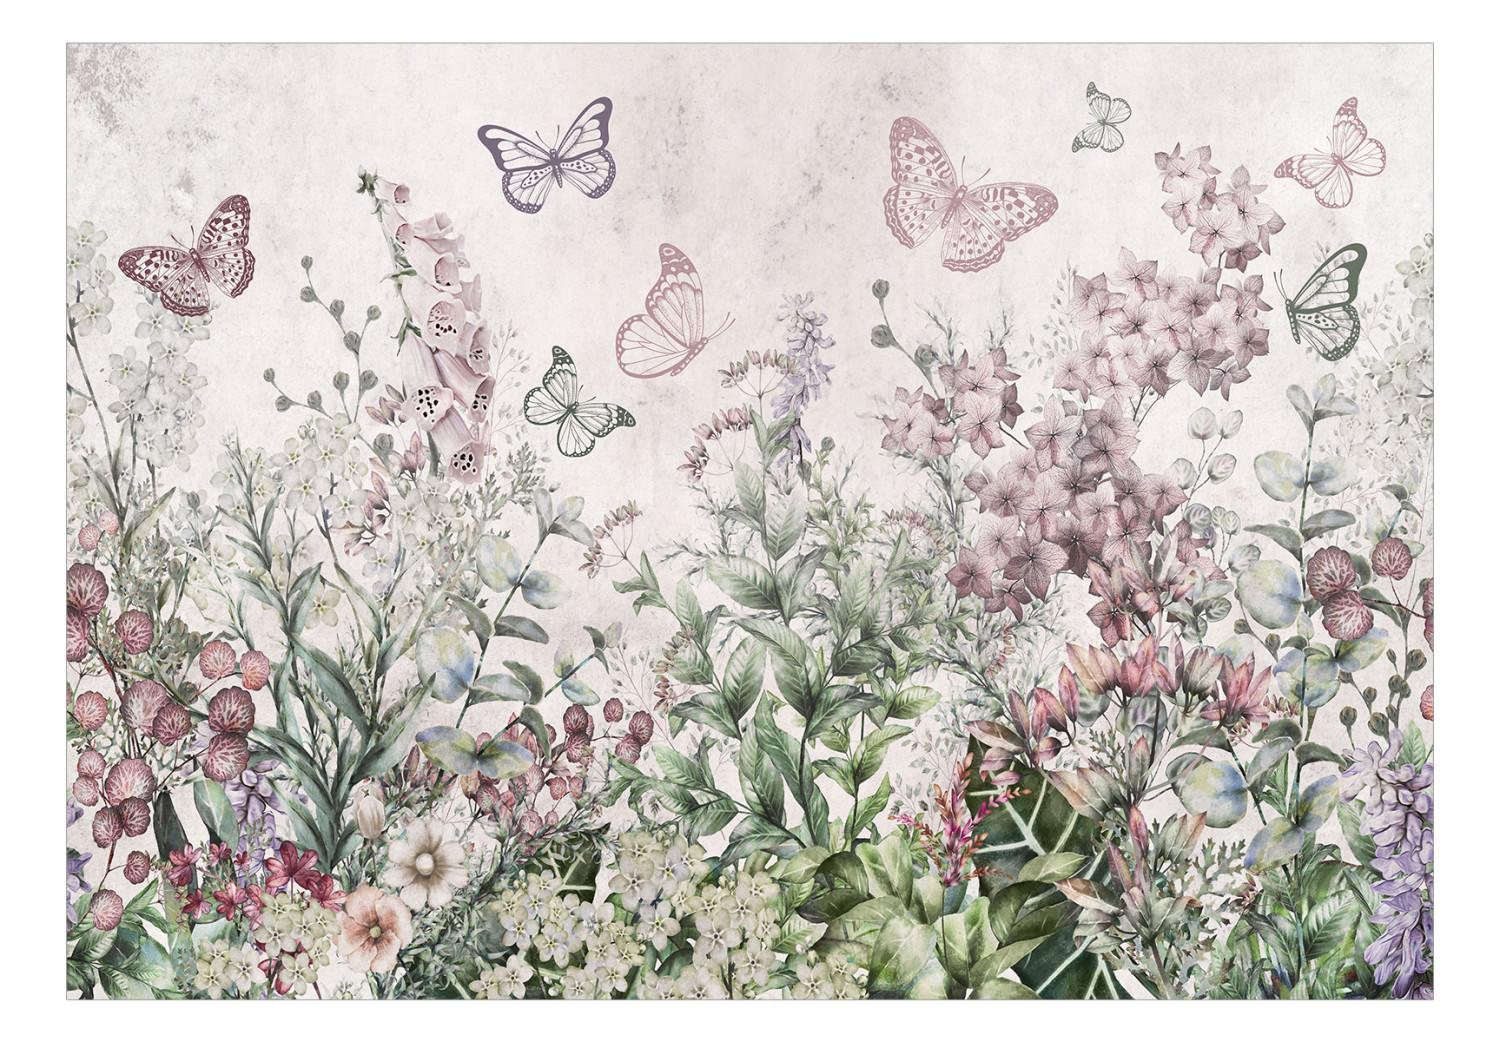 Fotomural Pradera alada - paisaje con plantas y mariposas en tonos rosados